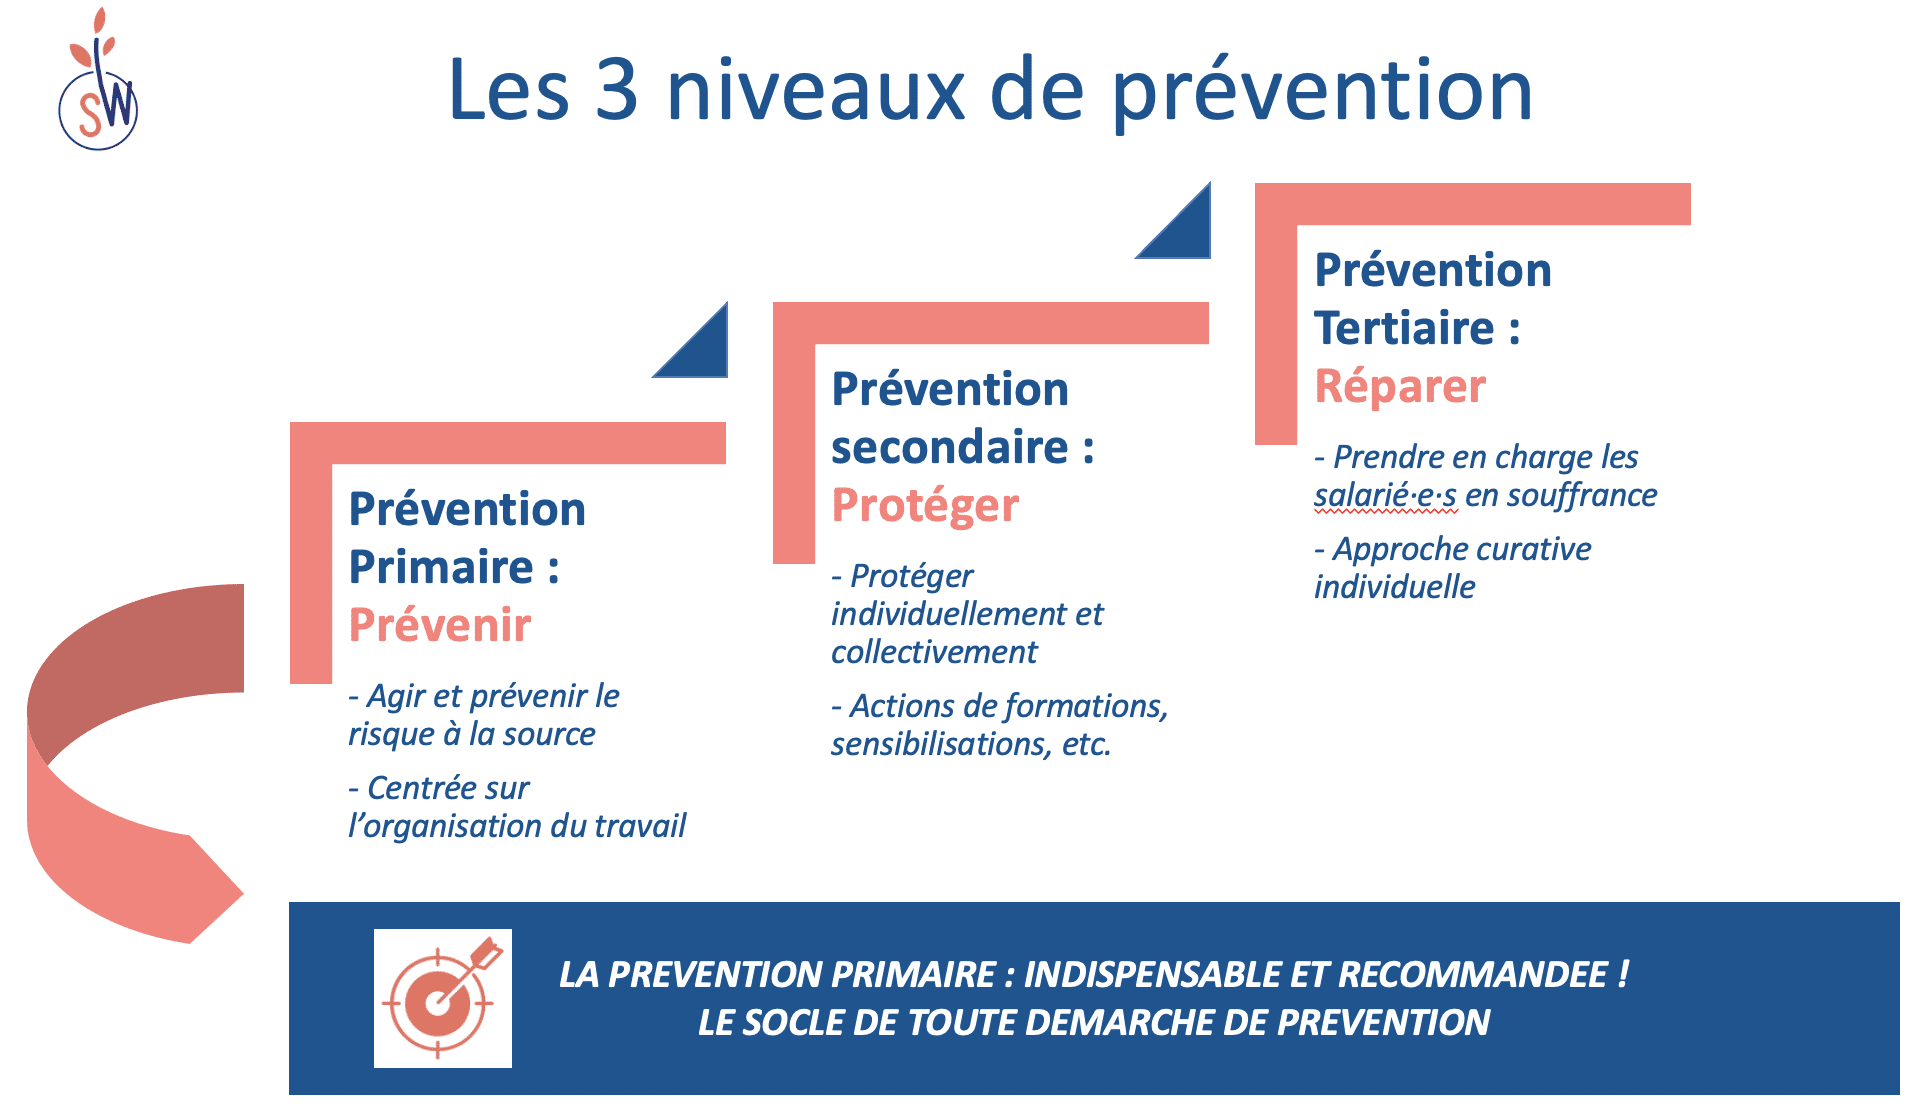 Loi santé travail : Les 3 niveaux de prevention